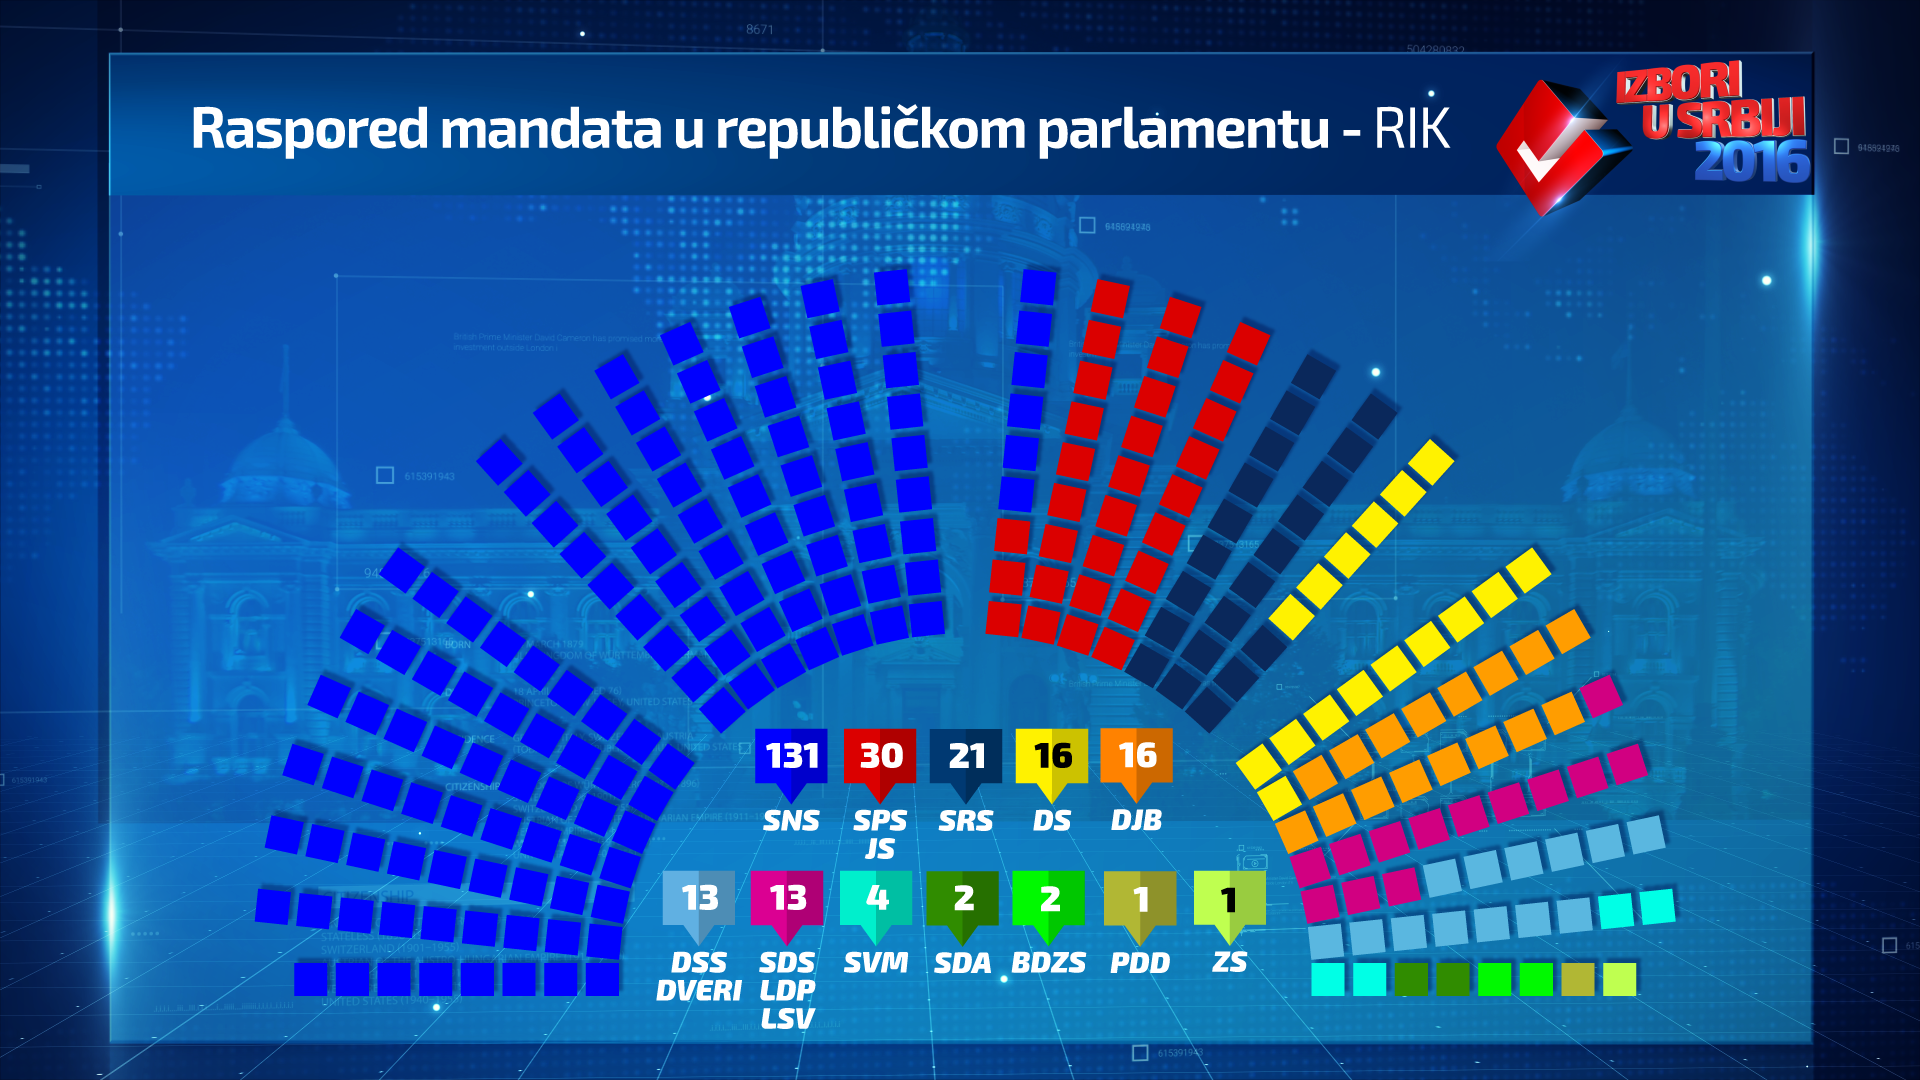 parlamentarni-rezultati-rik-mandati.png